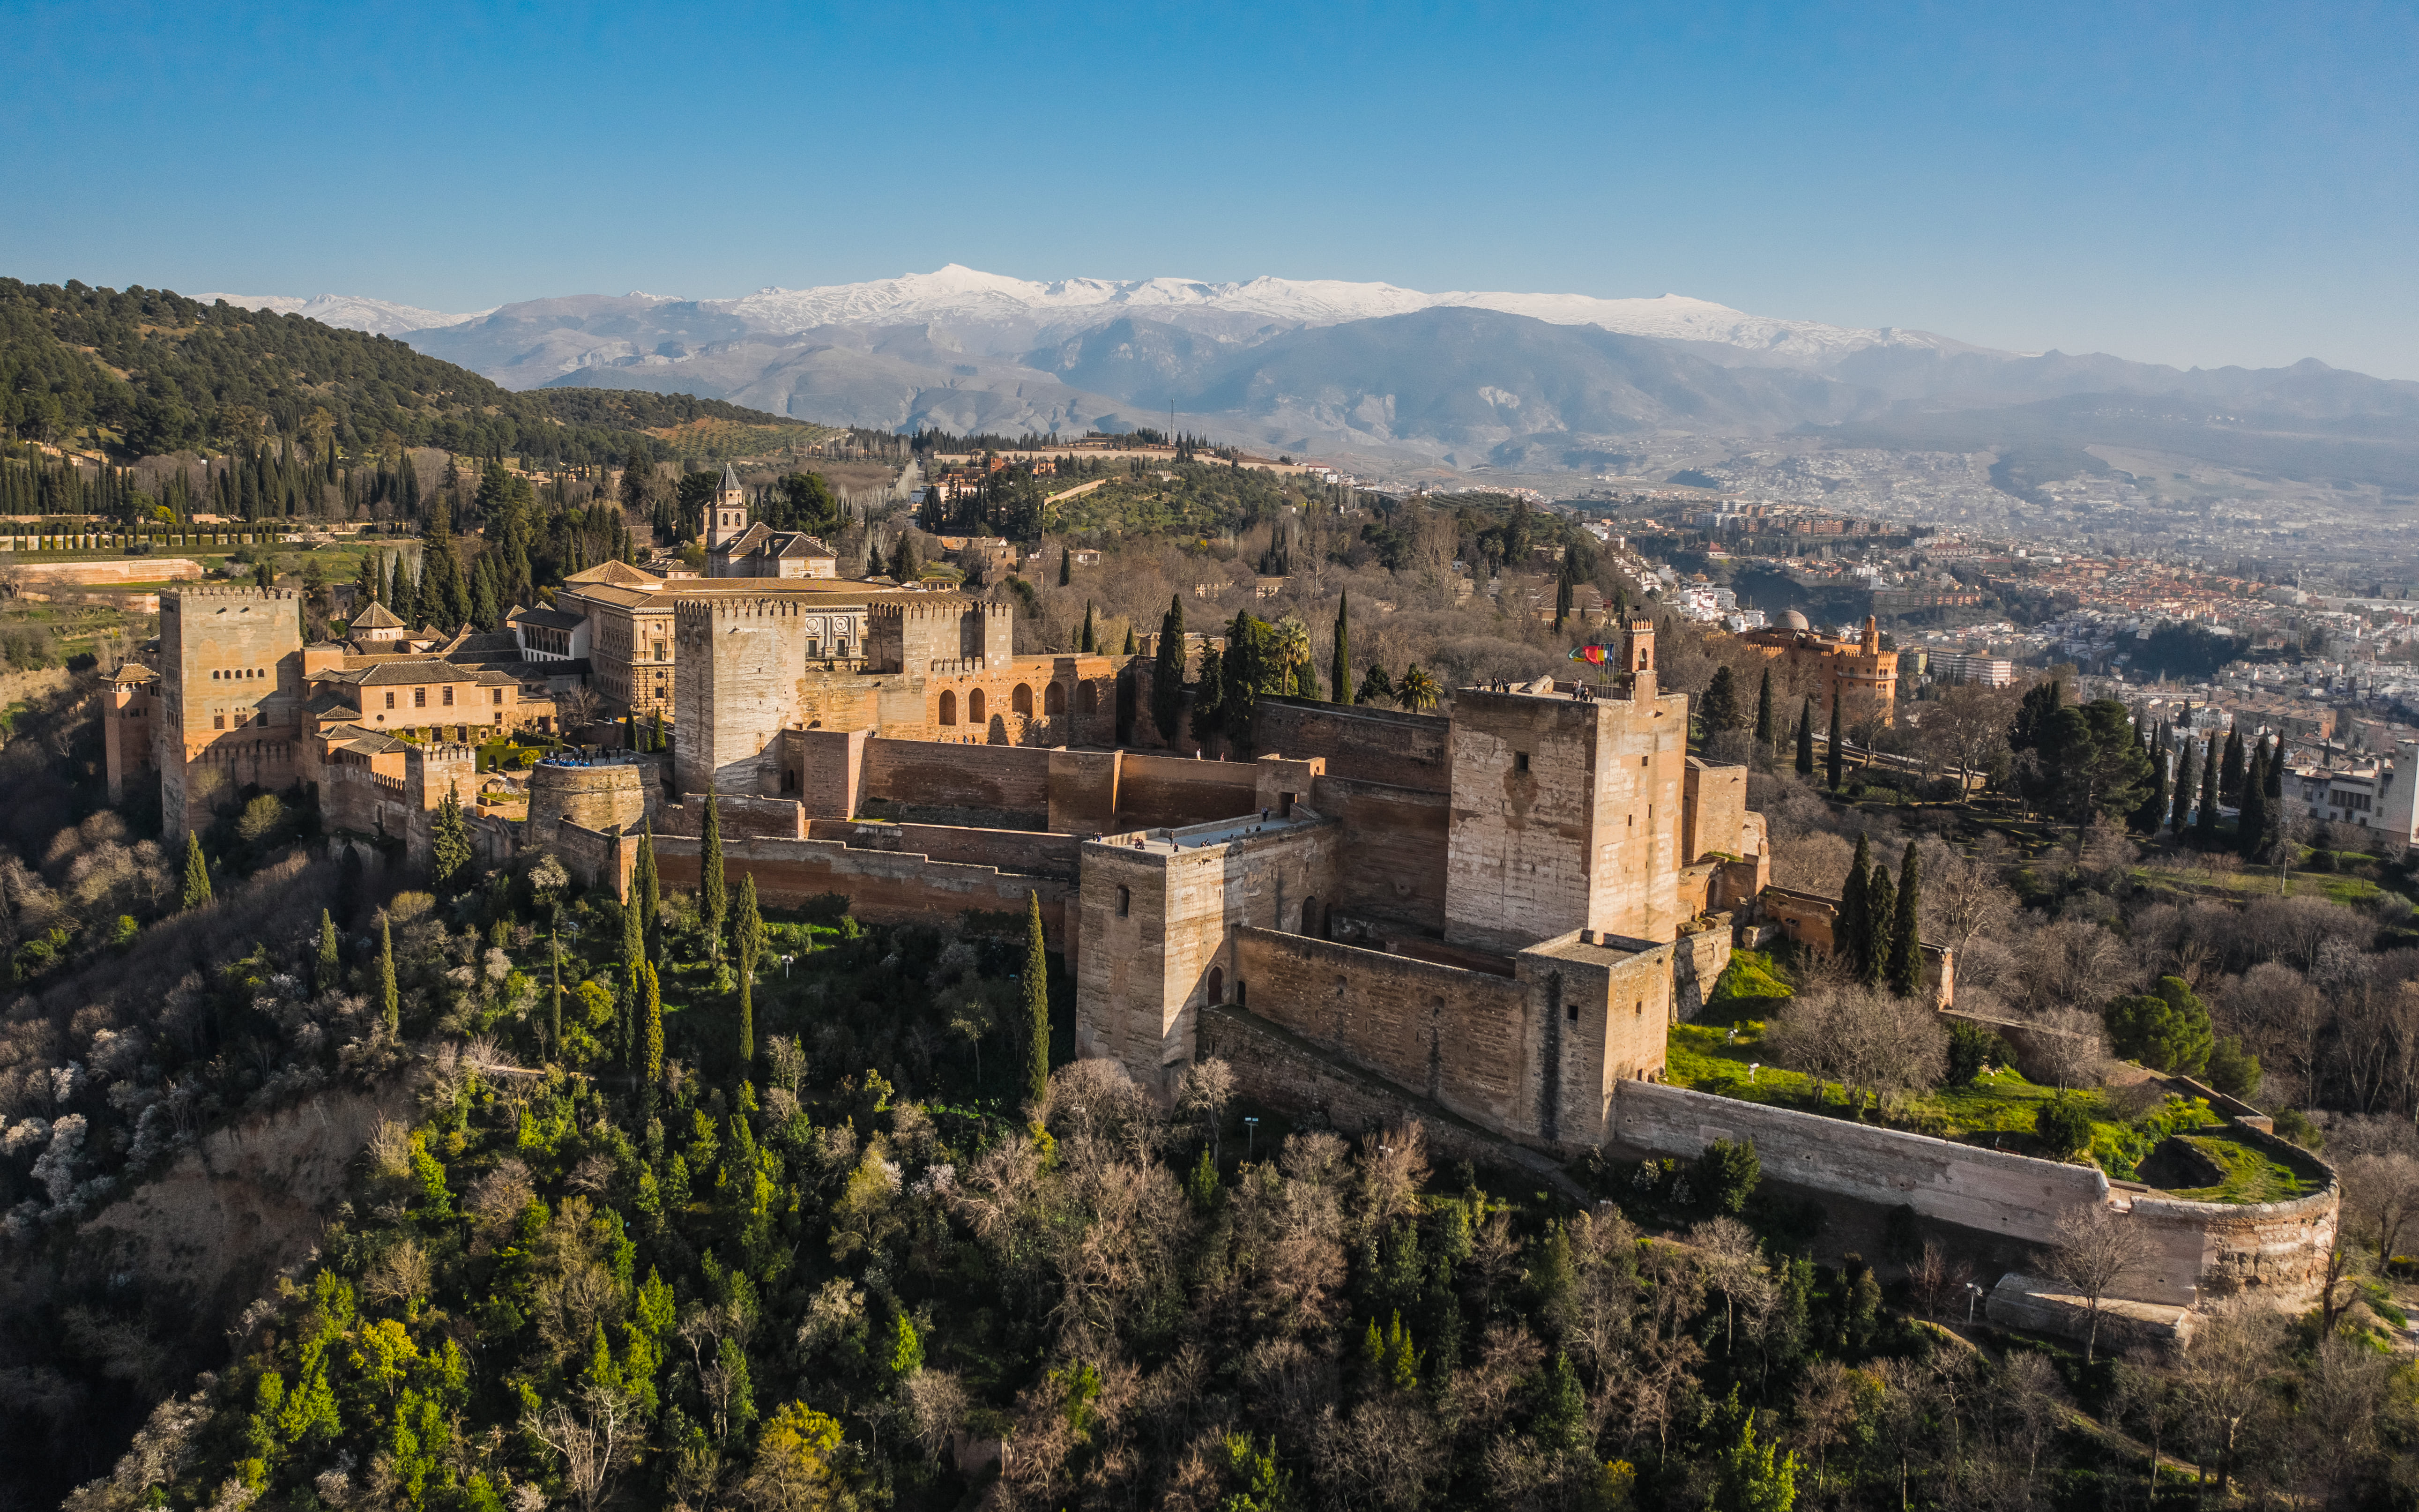 Visit the Alhambra in Granada